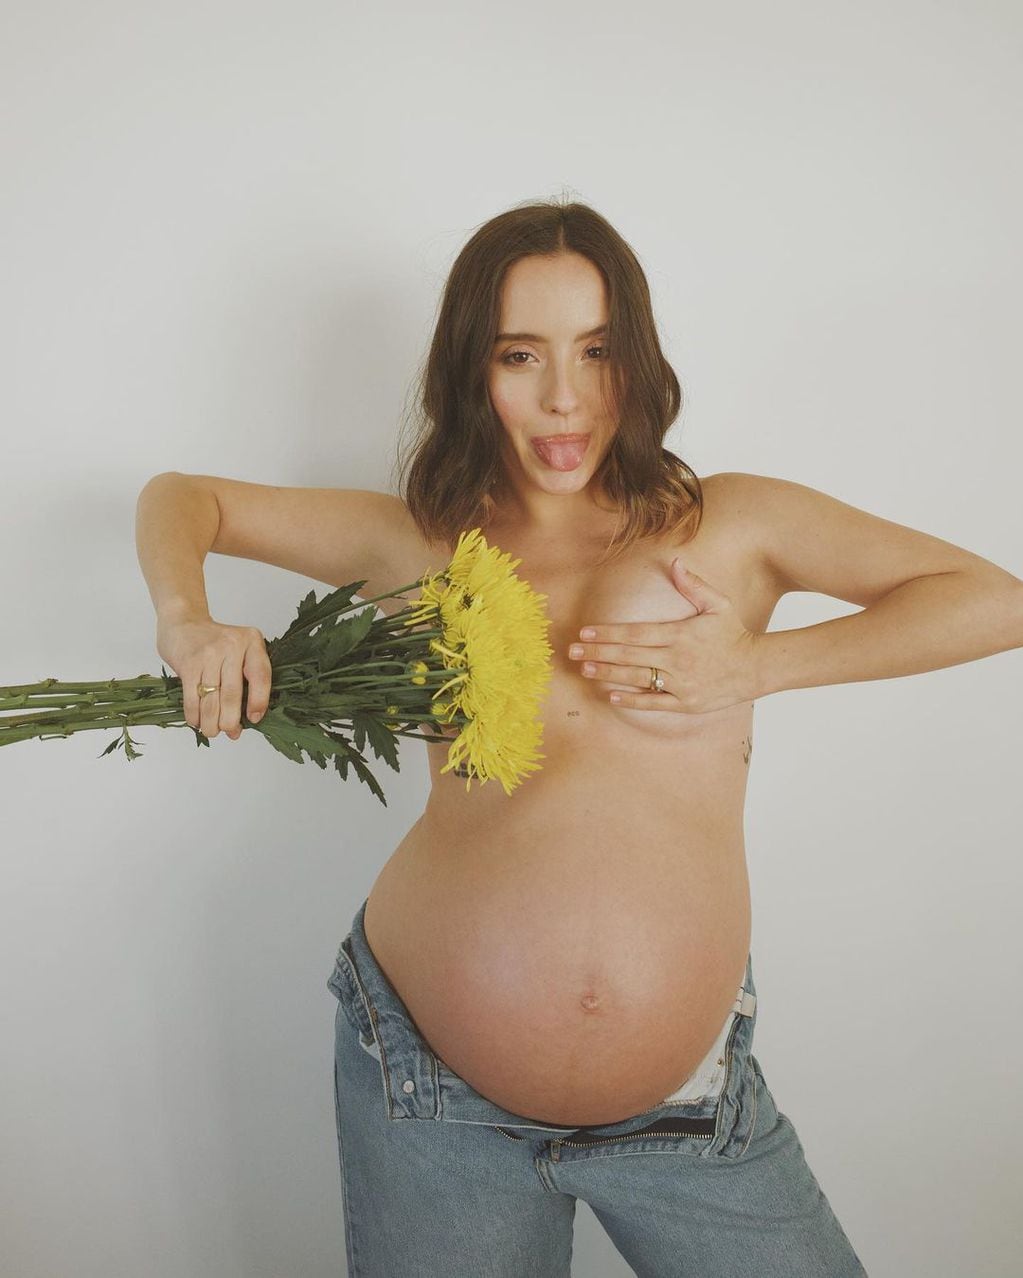 La hija de Ricardo Montaner compartió una sesión de fotos donde utilizó un ramo de flores para evitar la censura de Instagram.